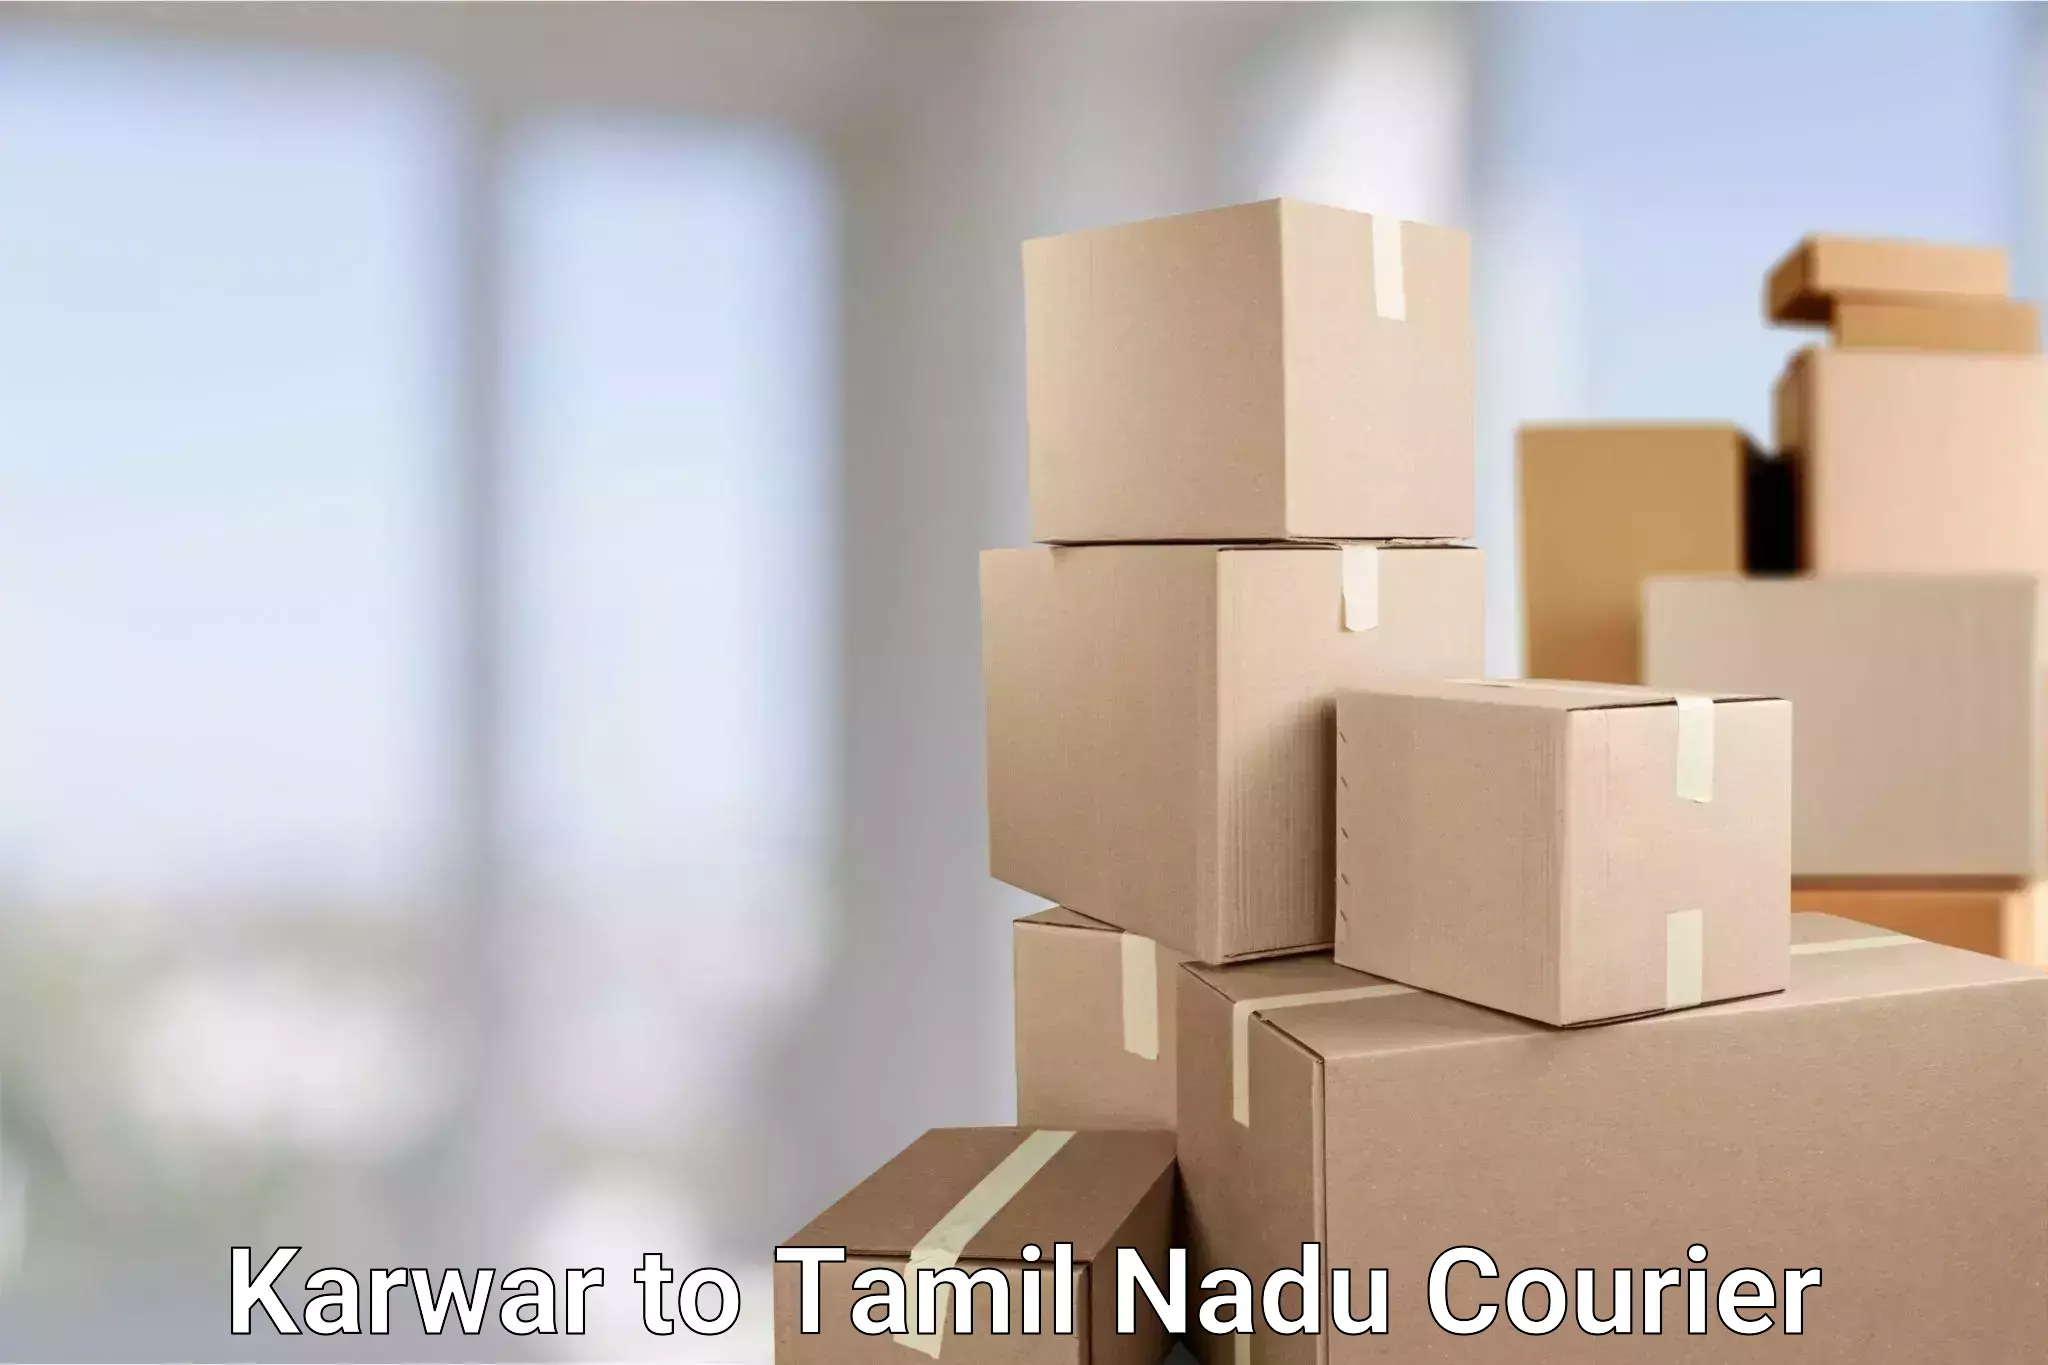 Customer-oriented courier services Karwar to Pattukottai